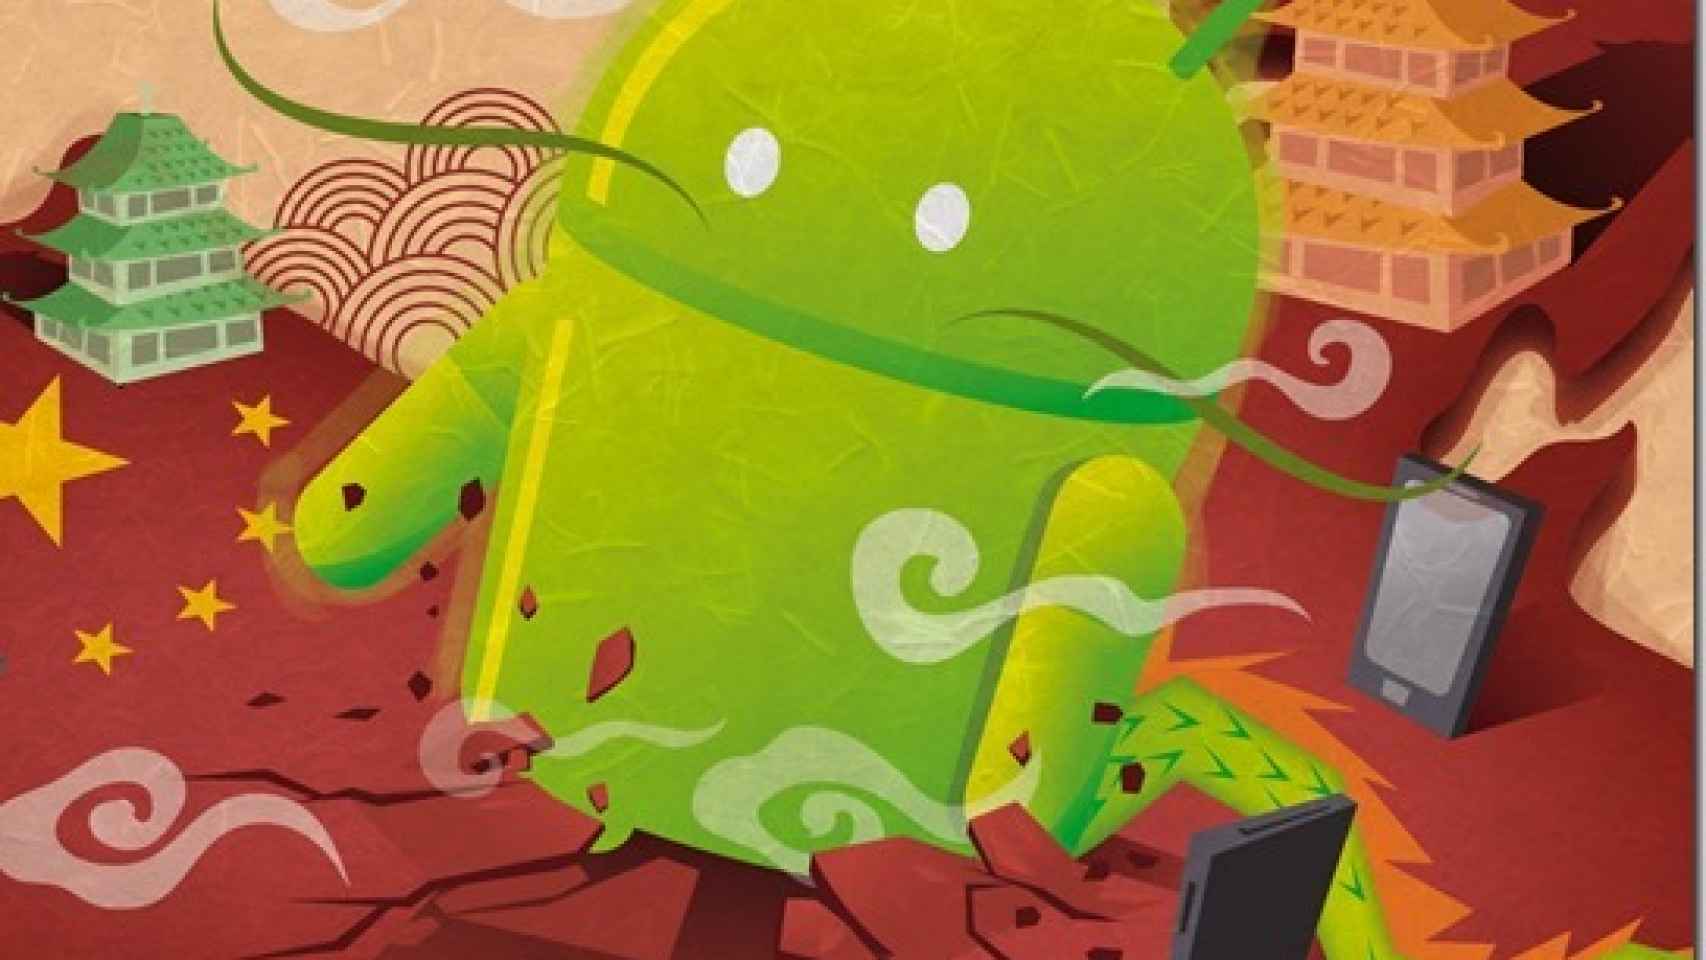 El 35% de las aplicaciones Android en China monitorizan en secreto los datos de los usuarios